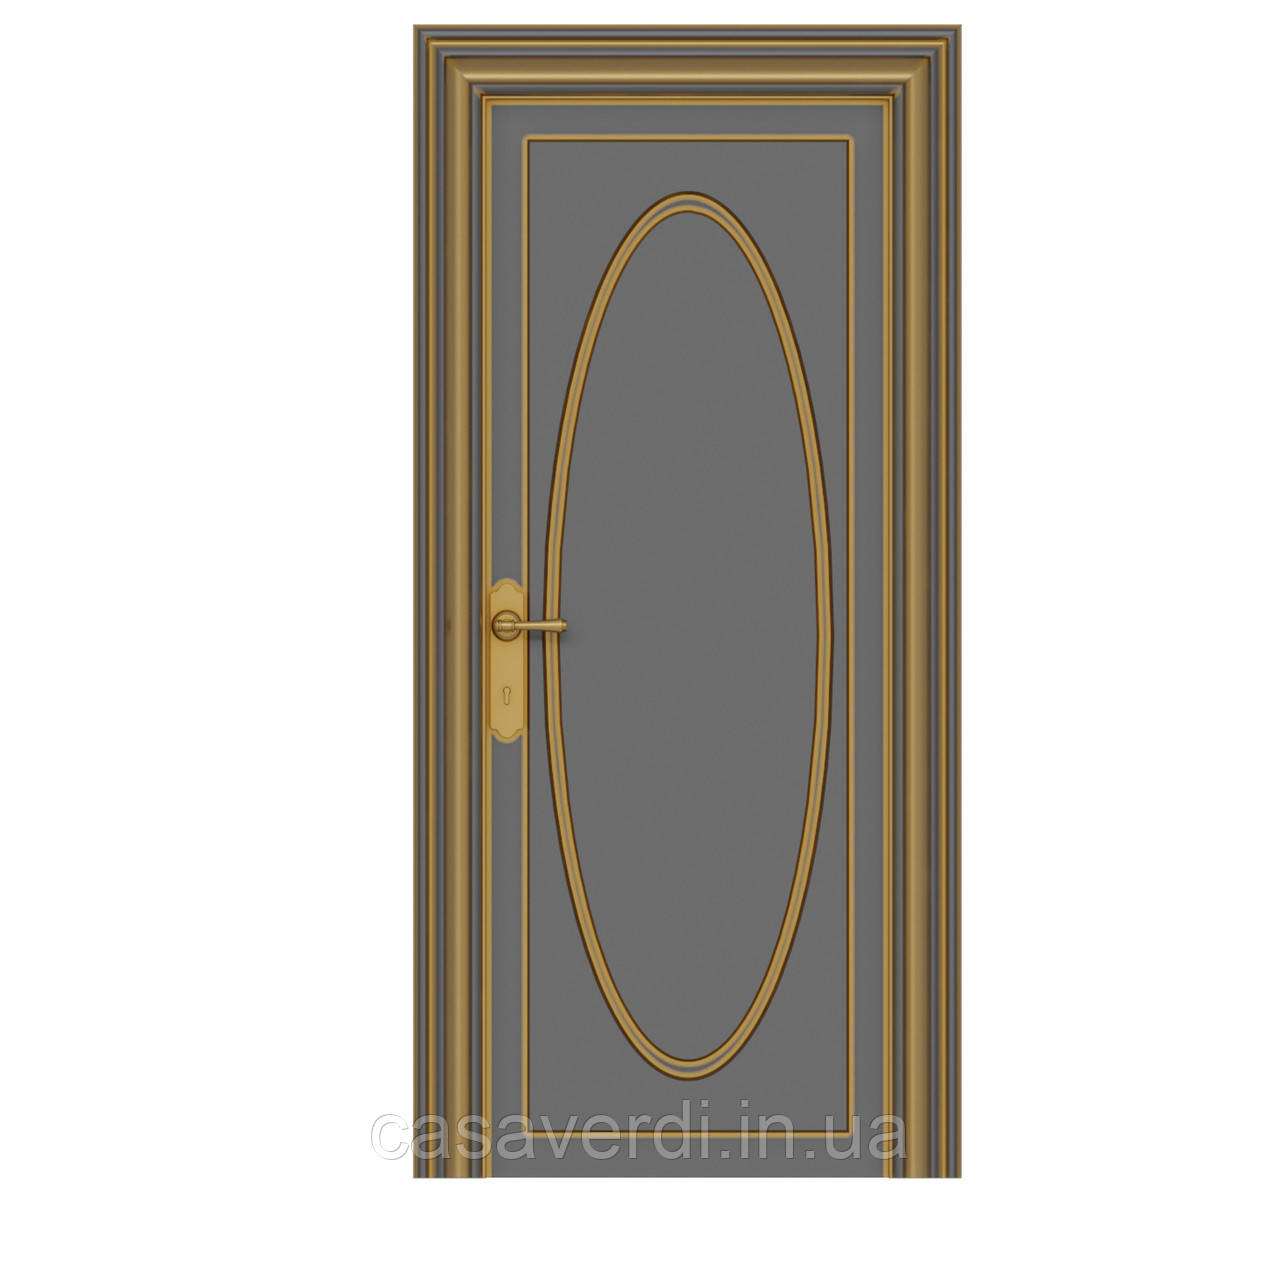 Міжкімнатні двері Casa Verdi Venezia 5 з масиву вільхи з золотою патиною